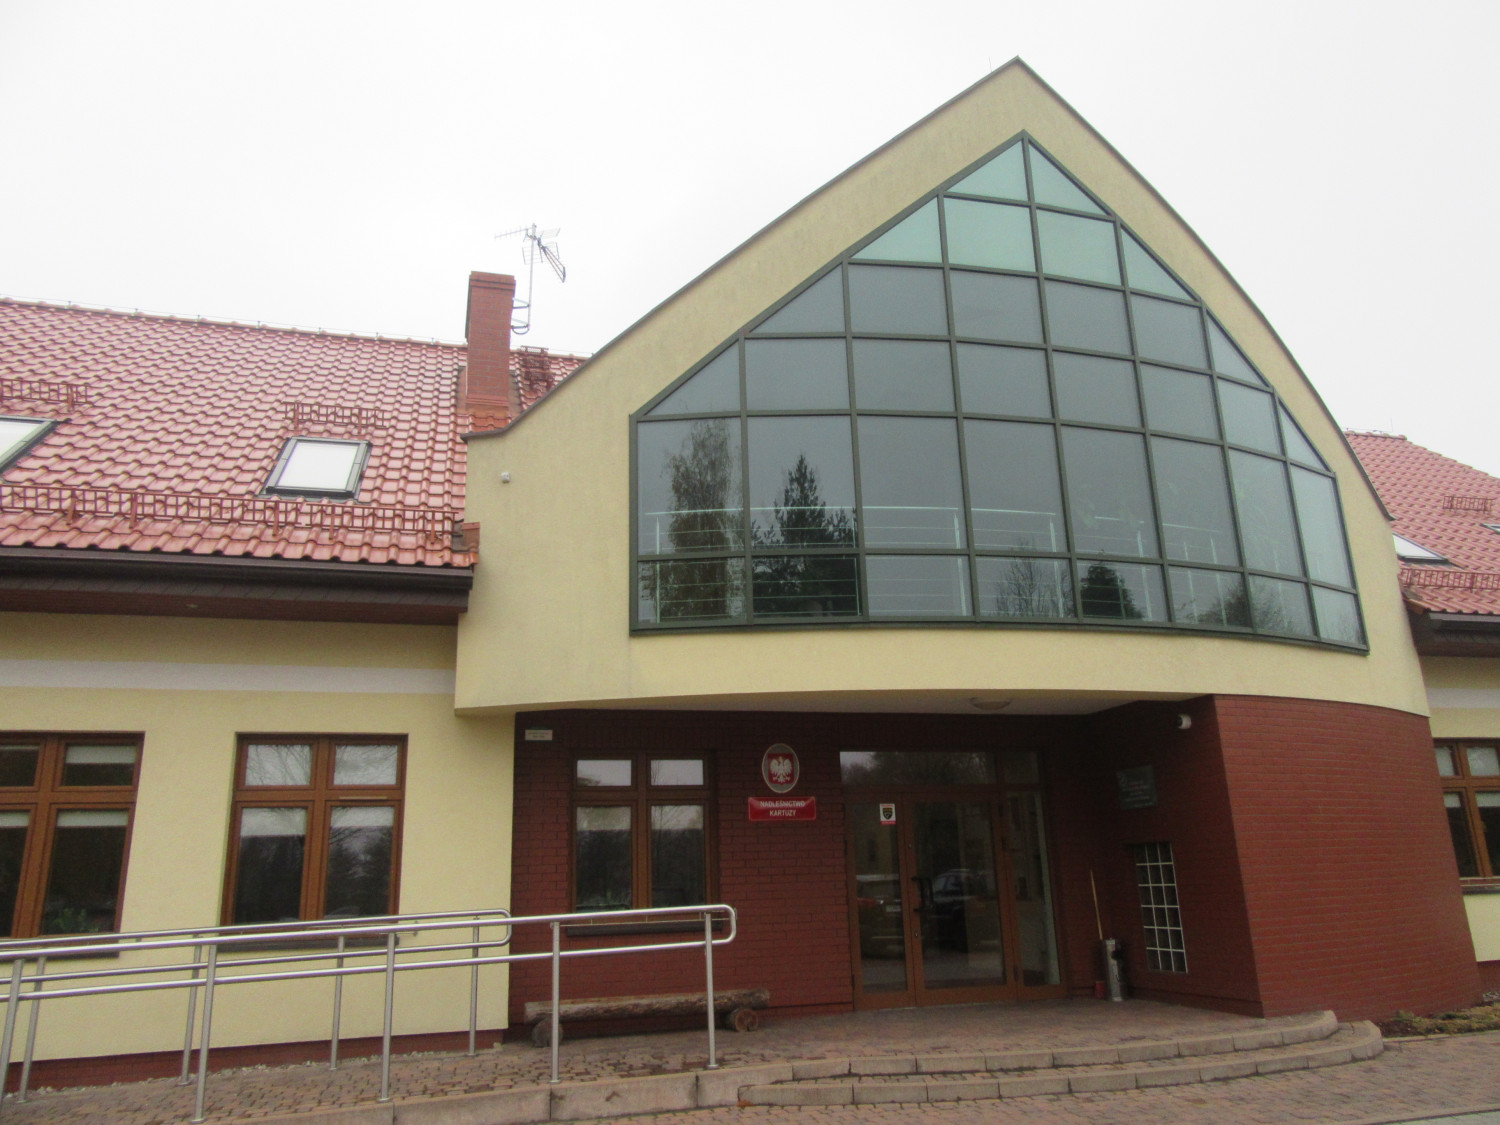 Obecna siedziba Nadleśnictwa Kartuzy znajduje się na Burchardztwie. fot. archiwum